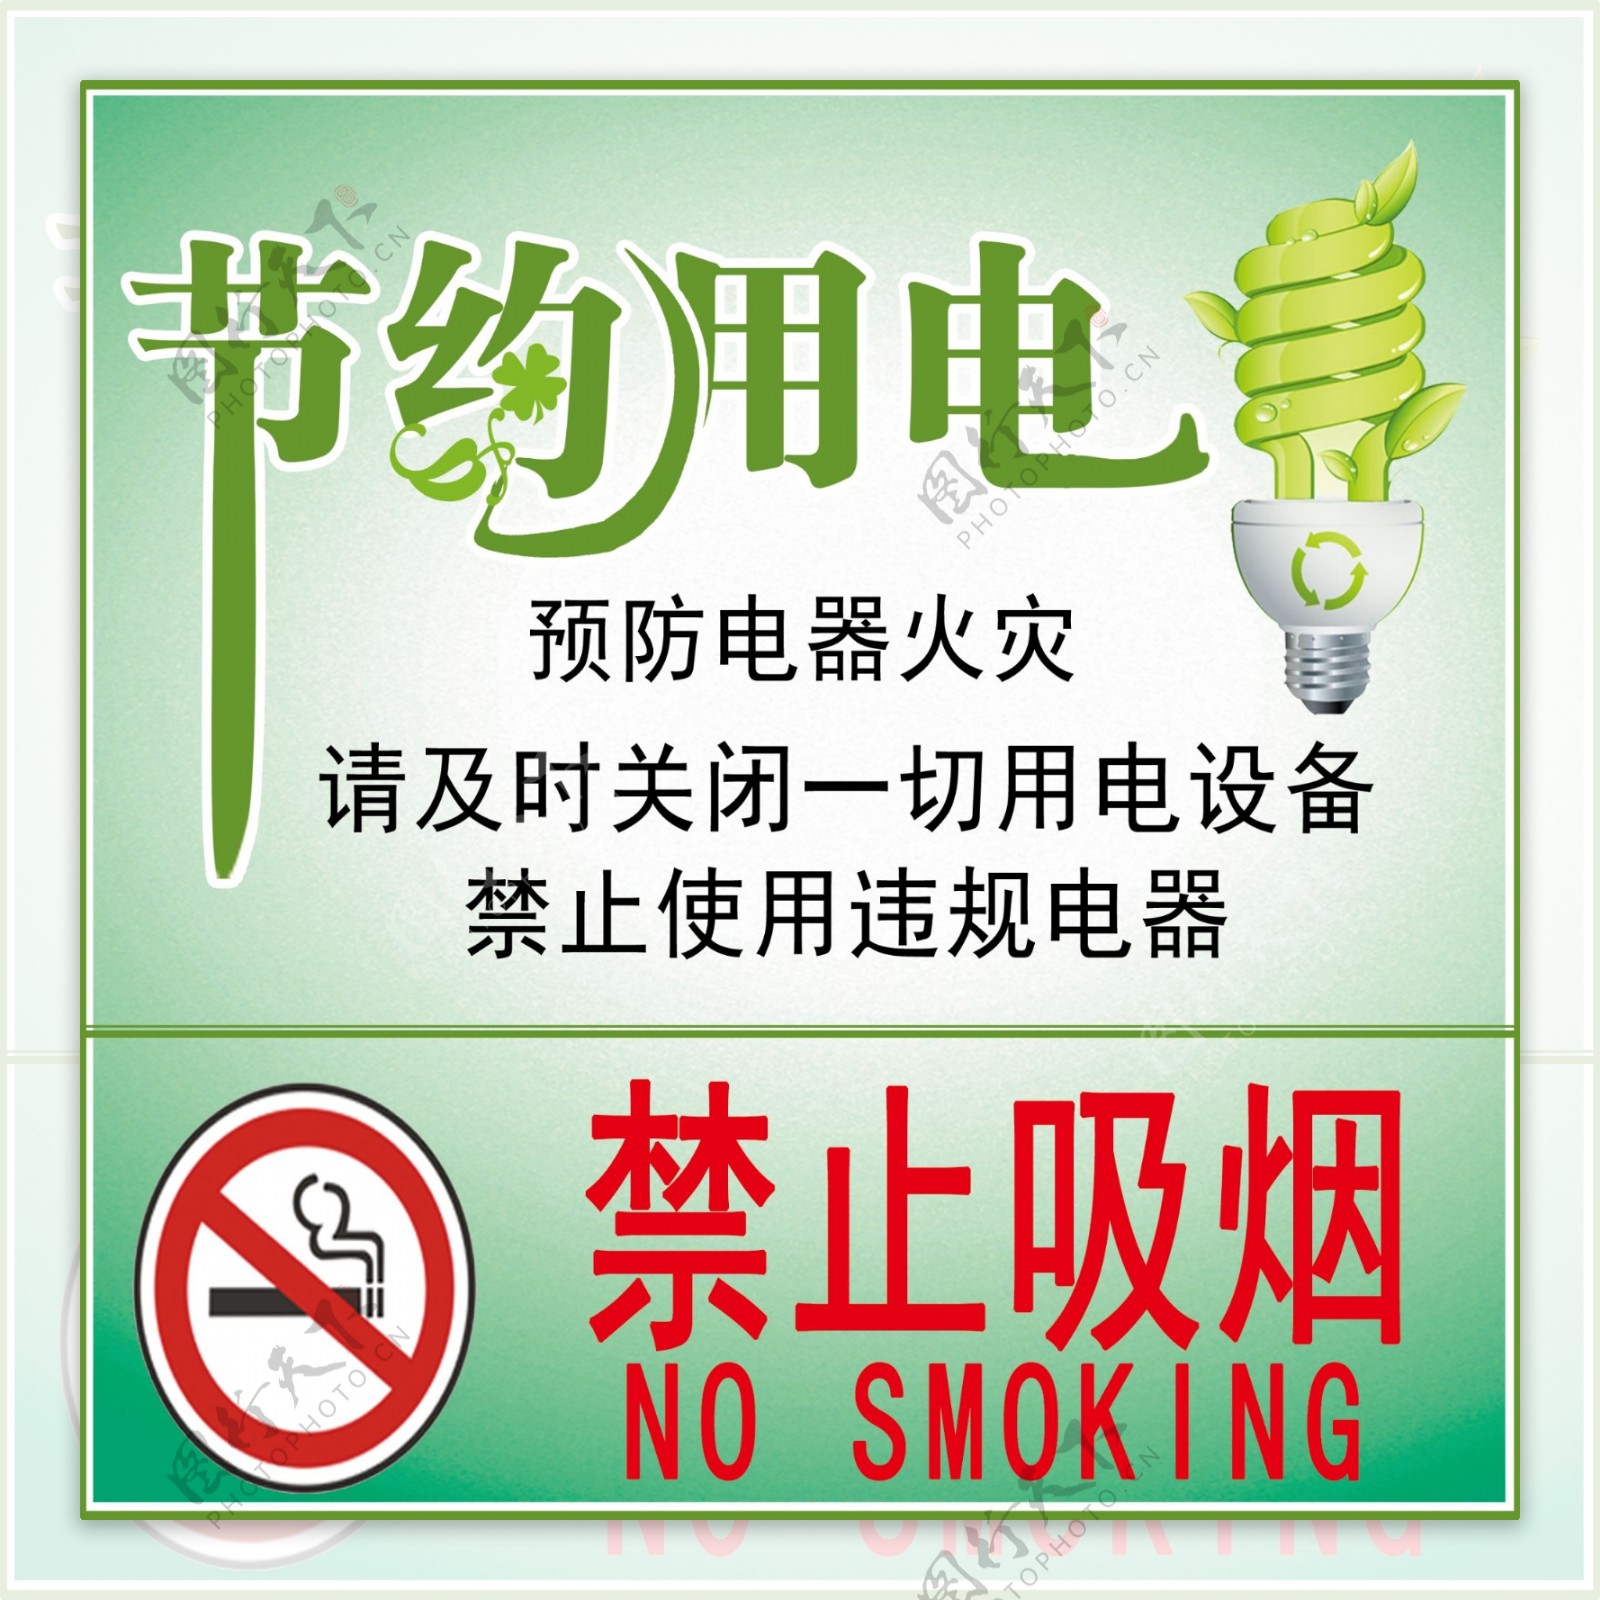 节约用电禁止吸烟